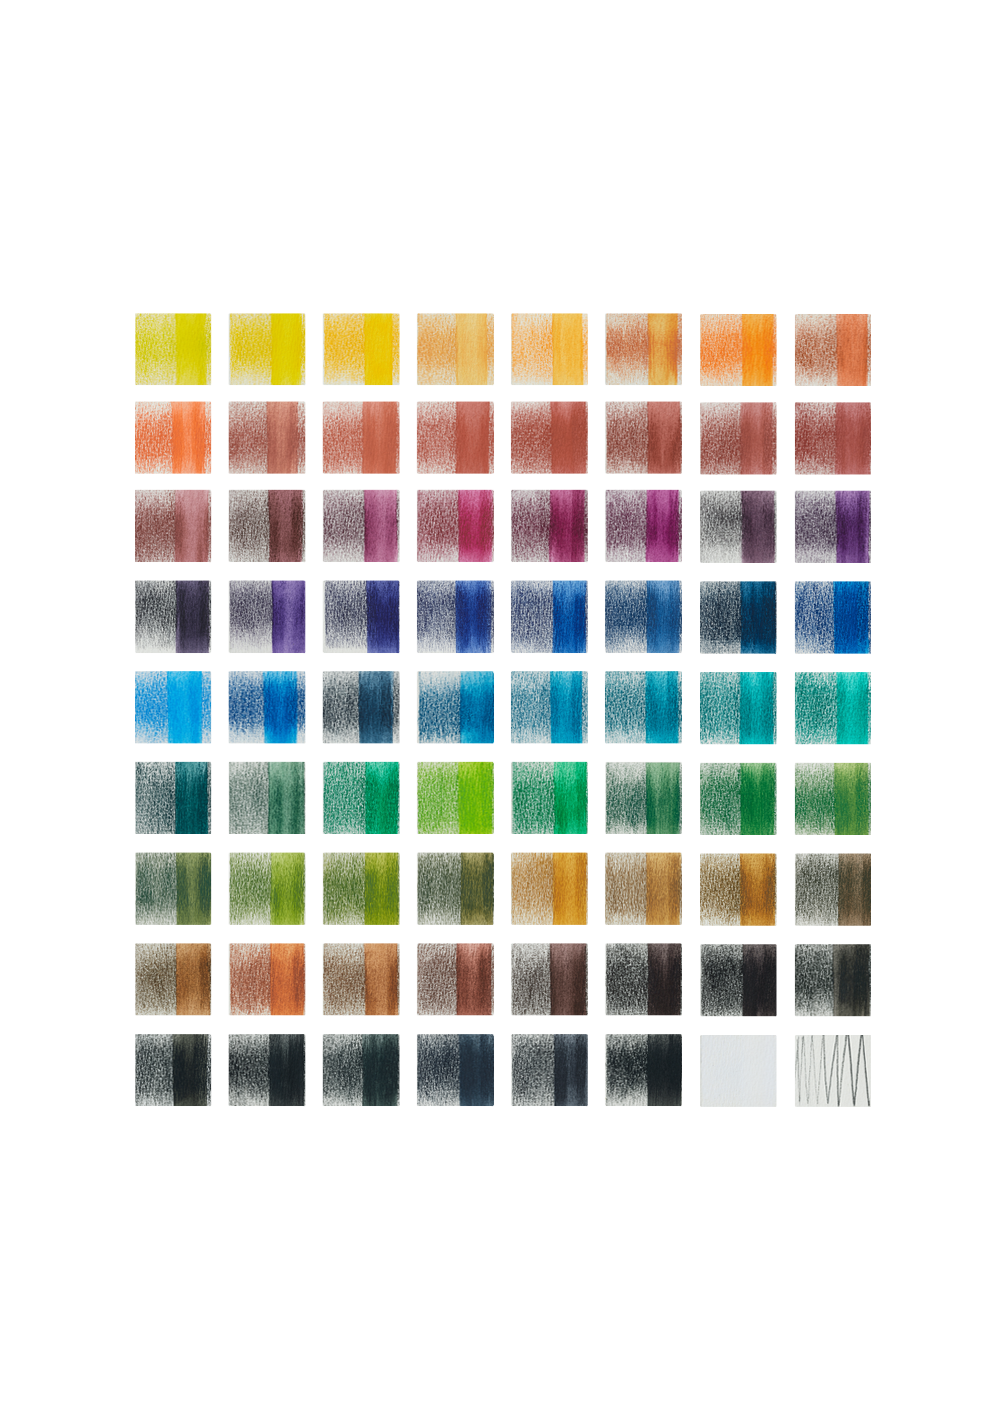 Lápices de Tinta Solubles al Agua Derwent Inktense Set 72 Colores 2301843